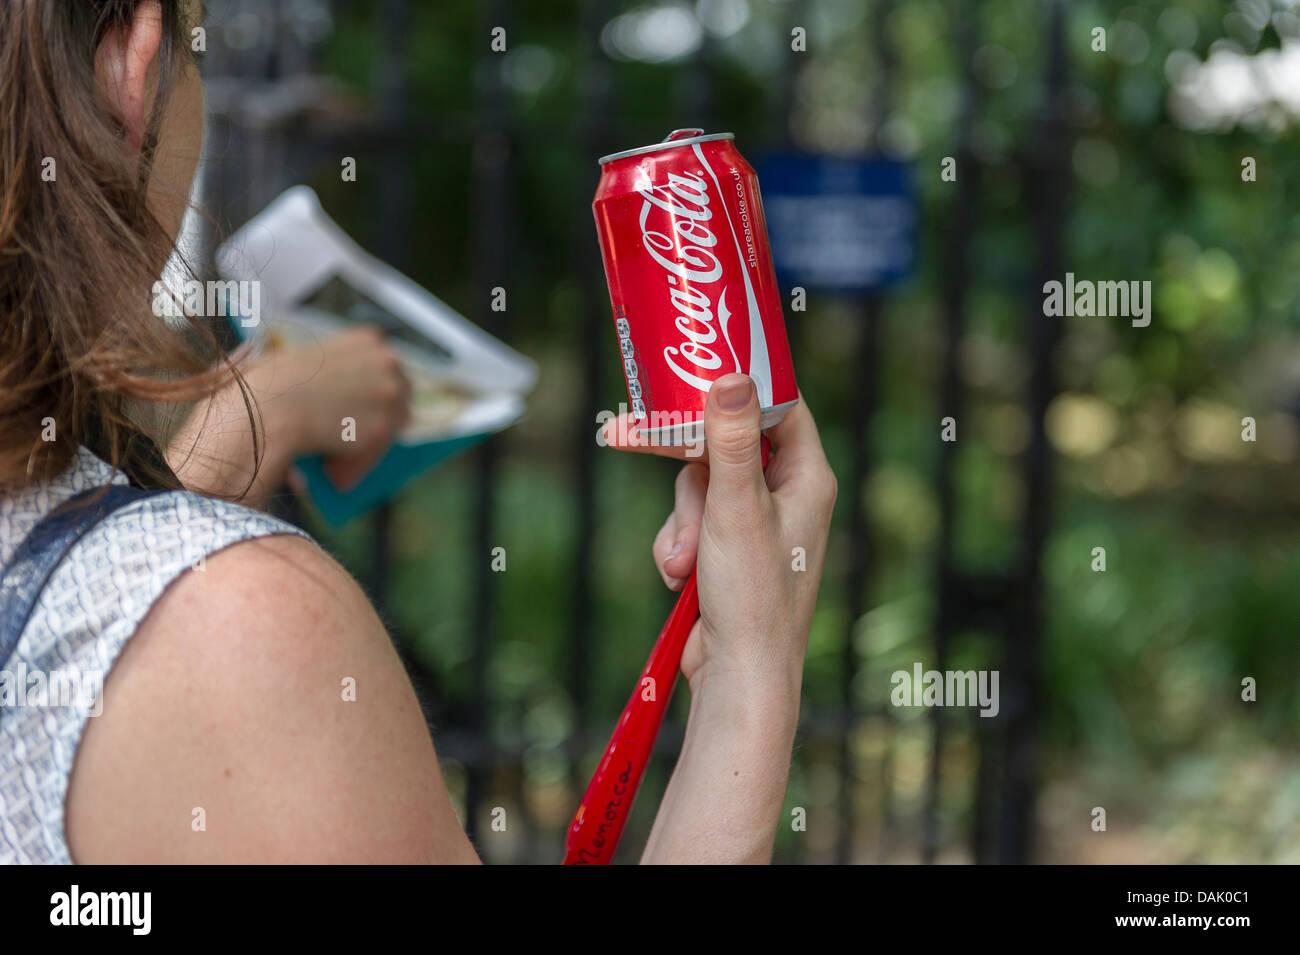 Eine Dose Coca Cola statt von einem Mädchen. Stockfoto